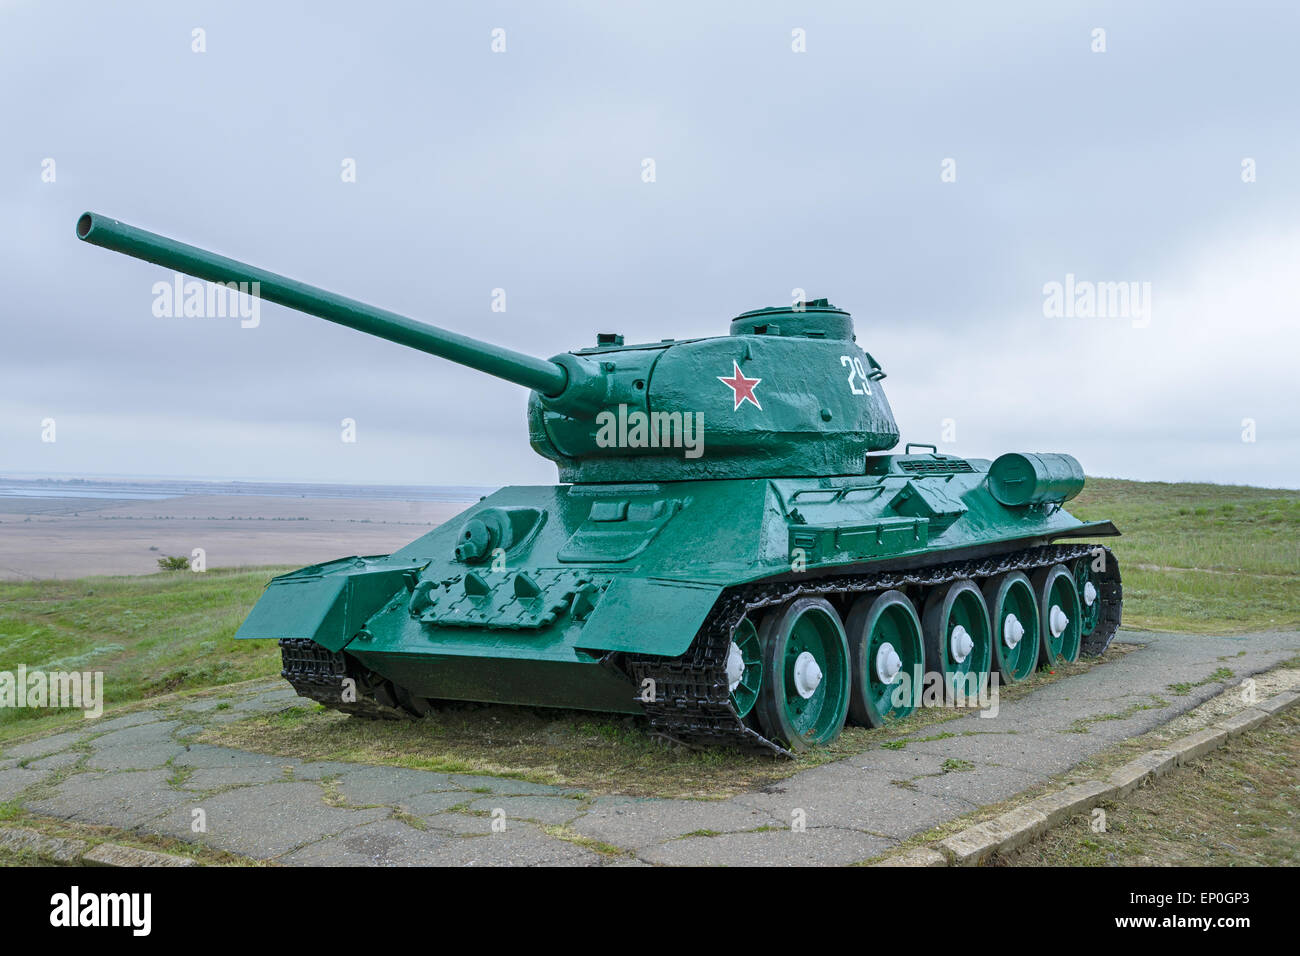 Serbatoio T-34 è nel museo a cielo aperto Foto Stock